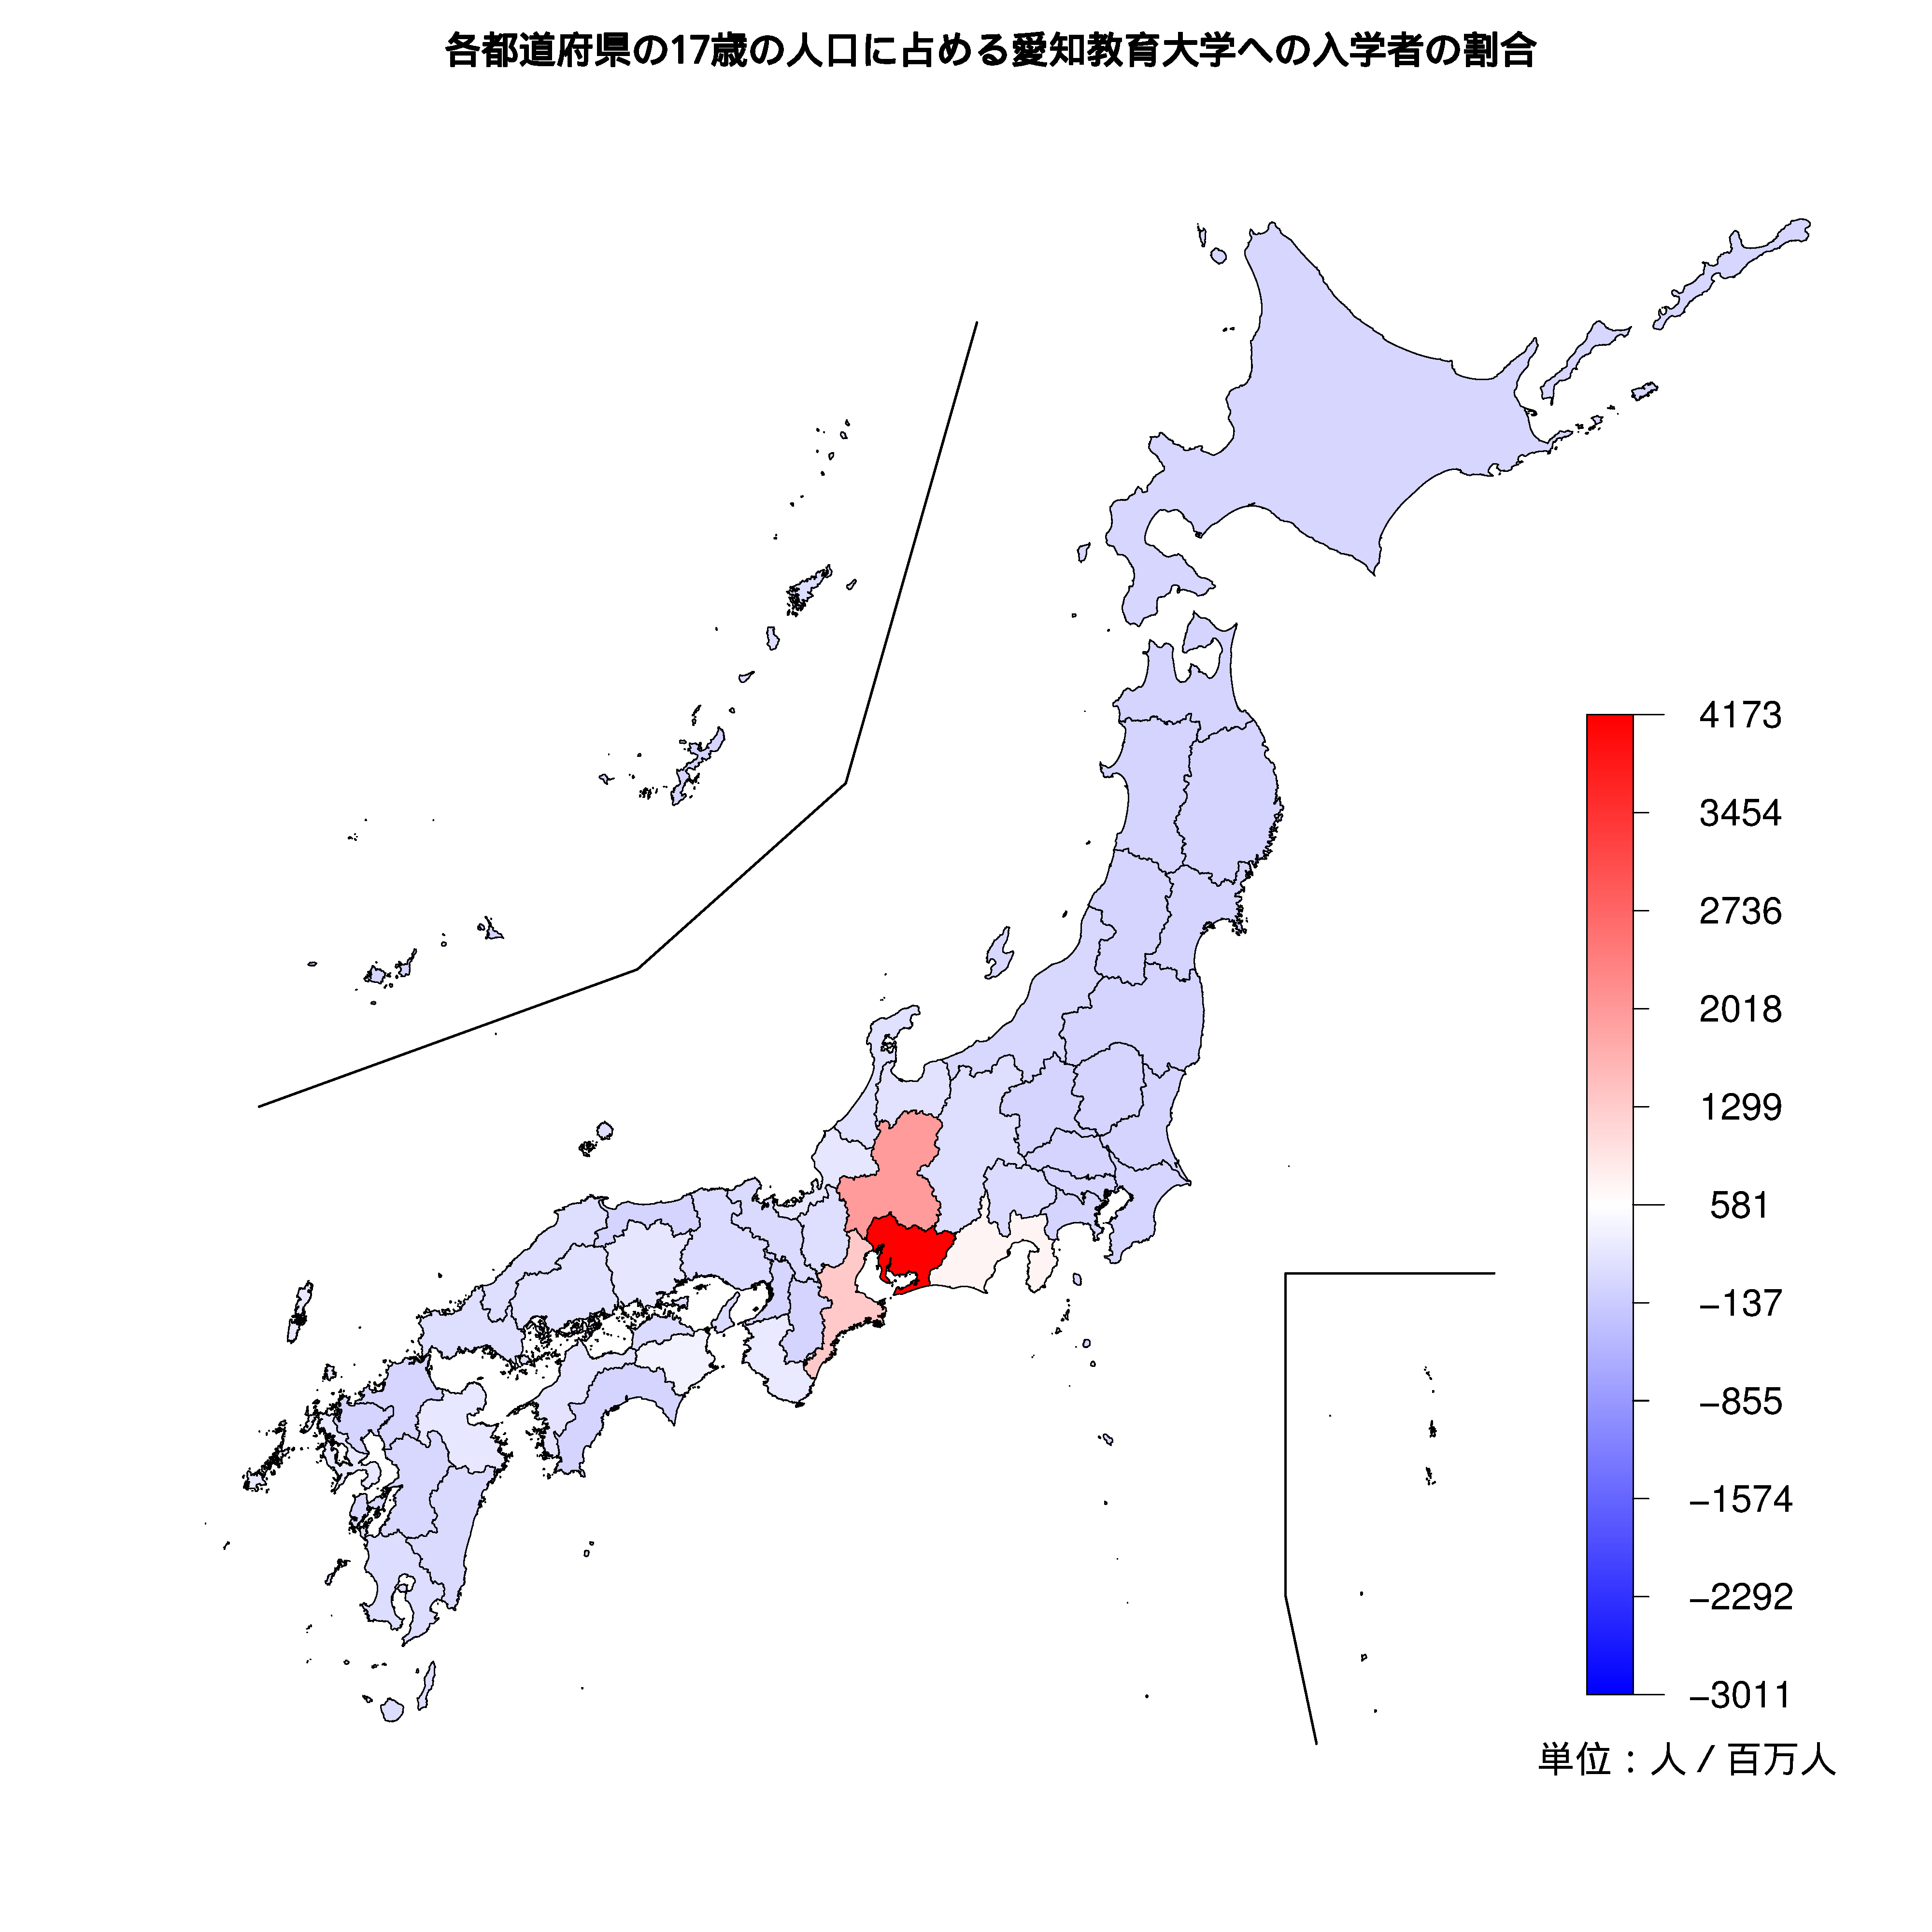 愛知教育大学への入学者が多い都道府県の色分け地図